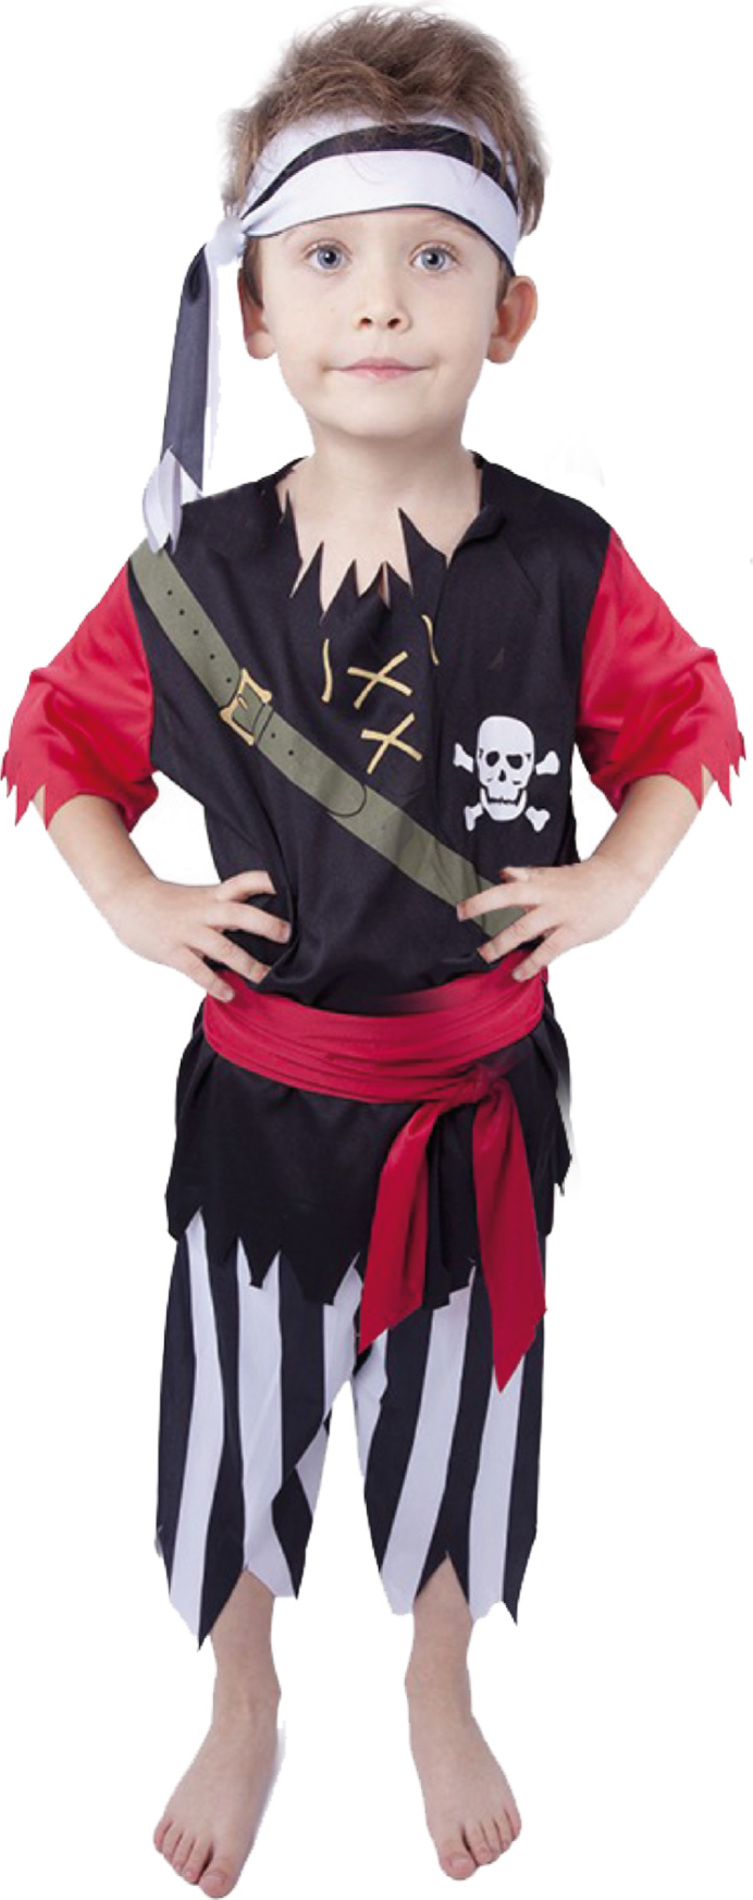 Dětský kostým Pirát s šátkem (M)